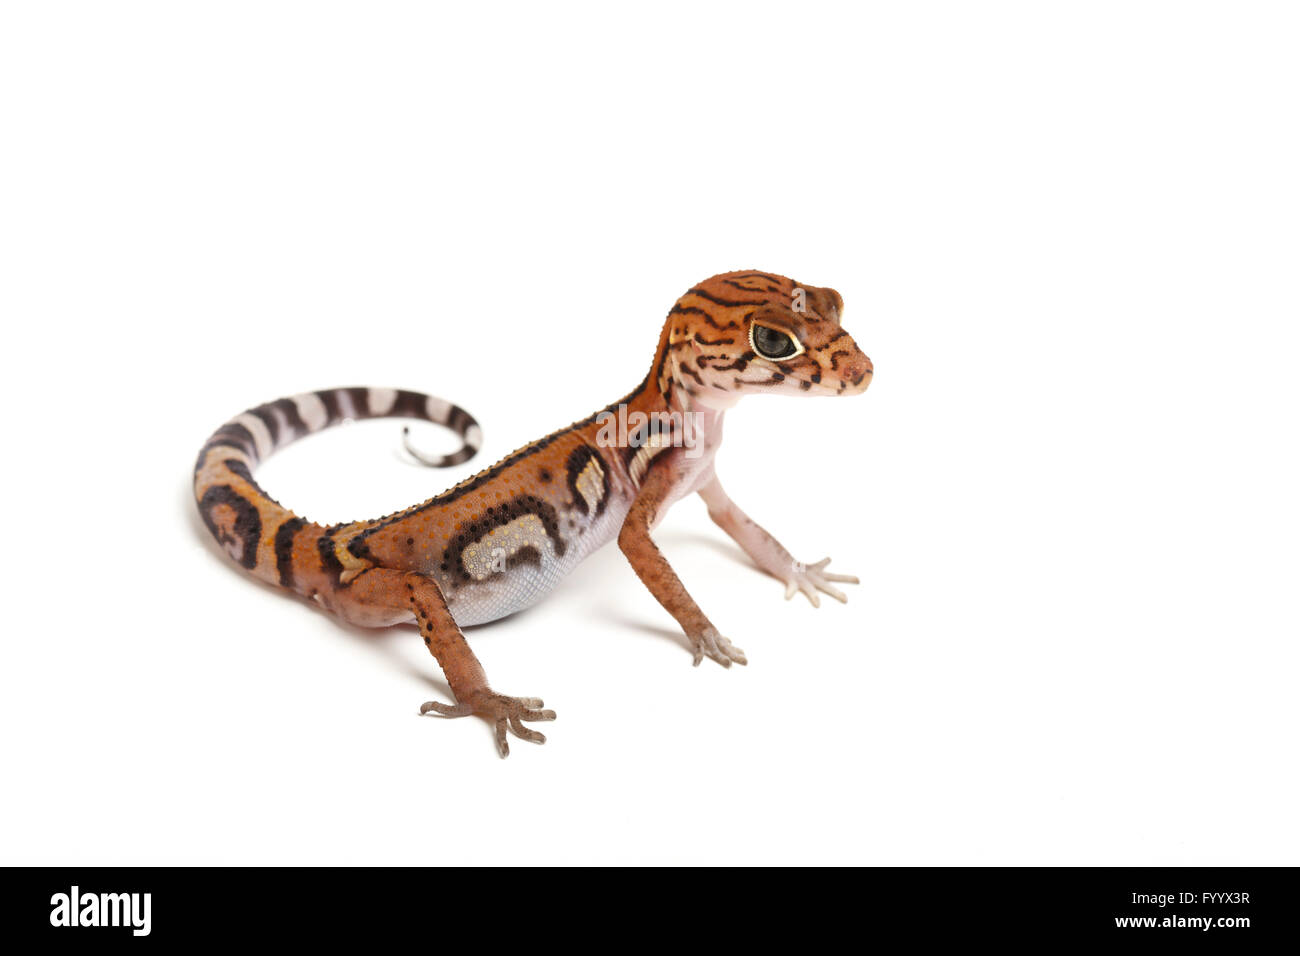 Yucatán, Coleonyx elegans Gecko bagués, adulte. L'Amérique centrale. Un membre de la famille Eublepharidae (captive) Banque D'Images